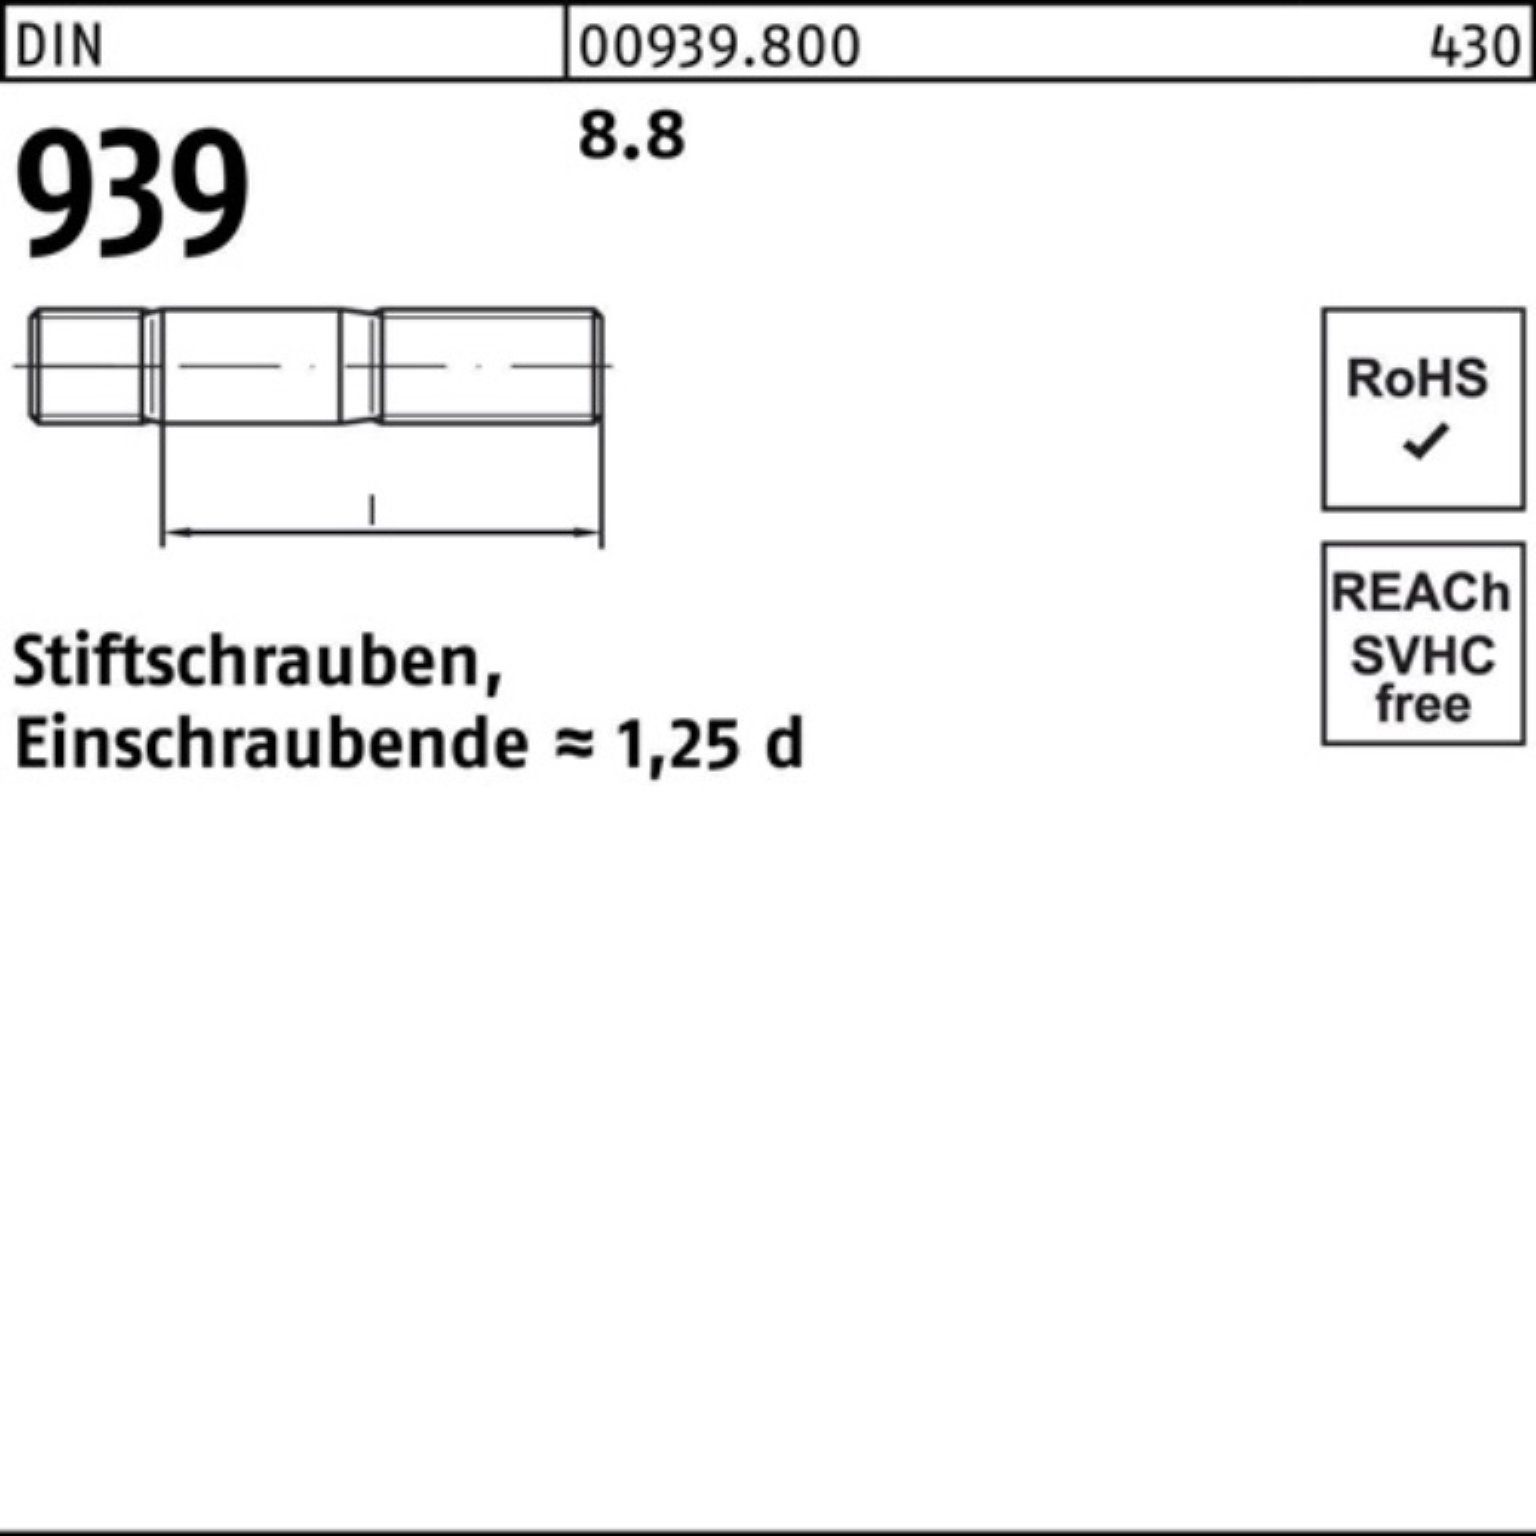 Pack 939 100er Stiftschraube S 60 25 8.8 Stiftschraube M12x Reyher Einschraubende=1,25d DIN